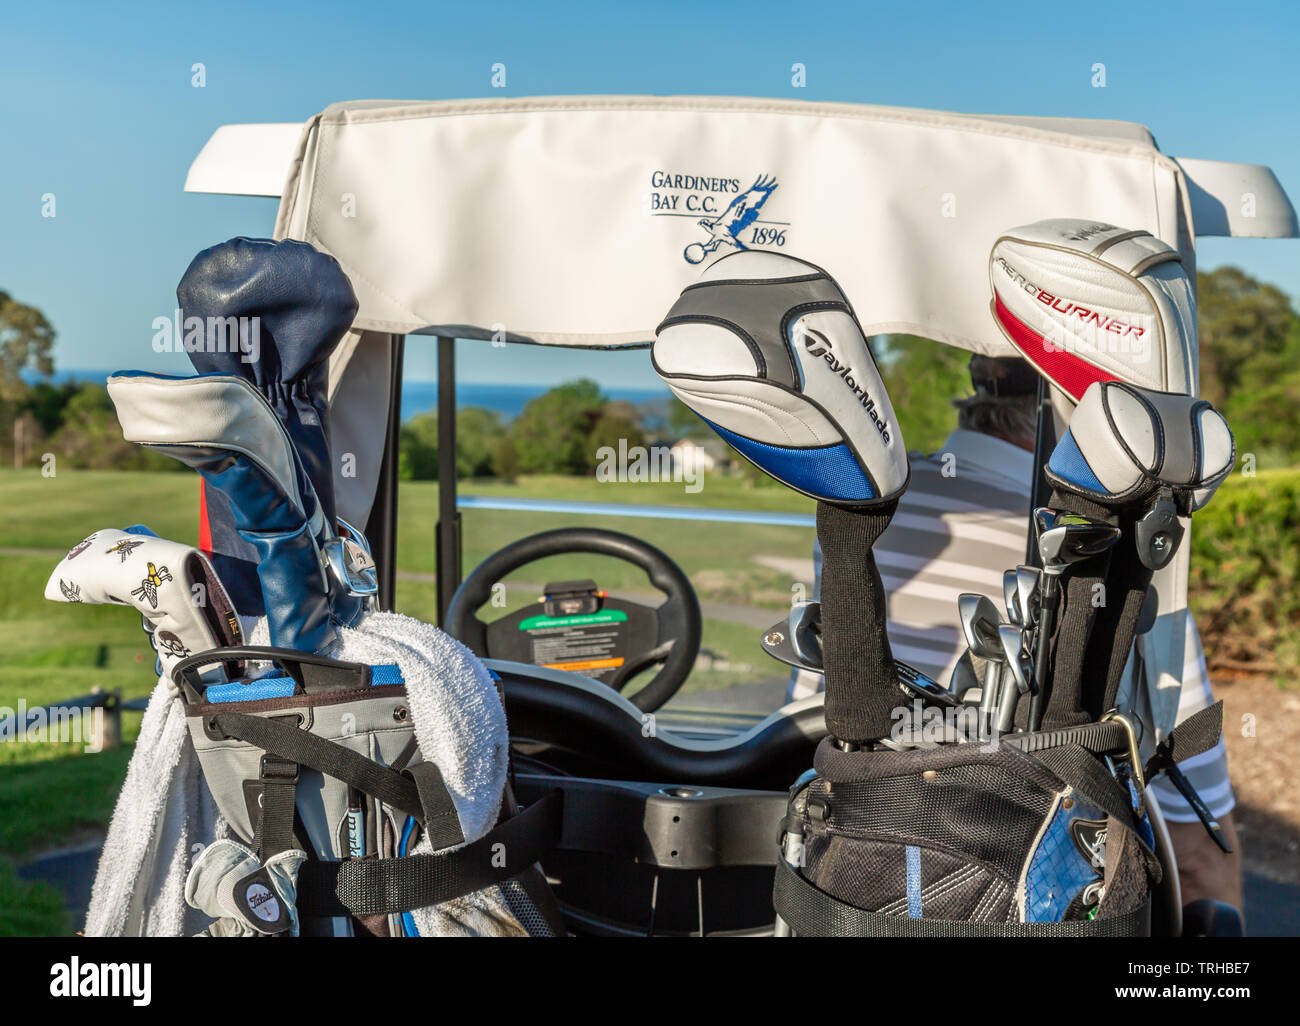 Deux ensembles de clubs de golf à l'arrière d'un chariot de golf à Gardiners Bay Country Club de Shelter Island, NY Banque D'Images